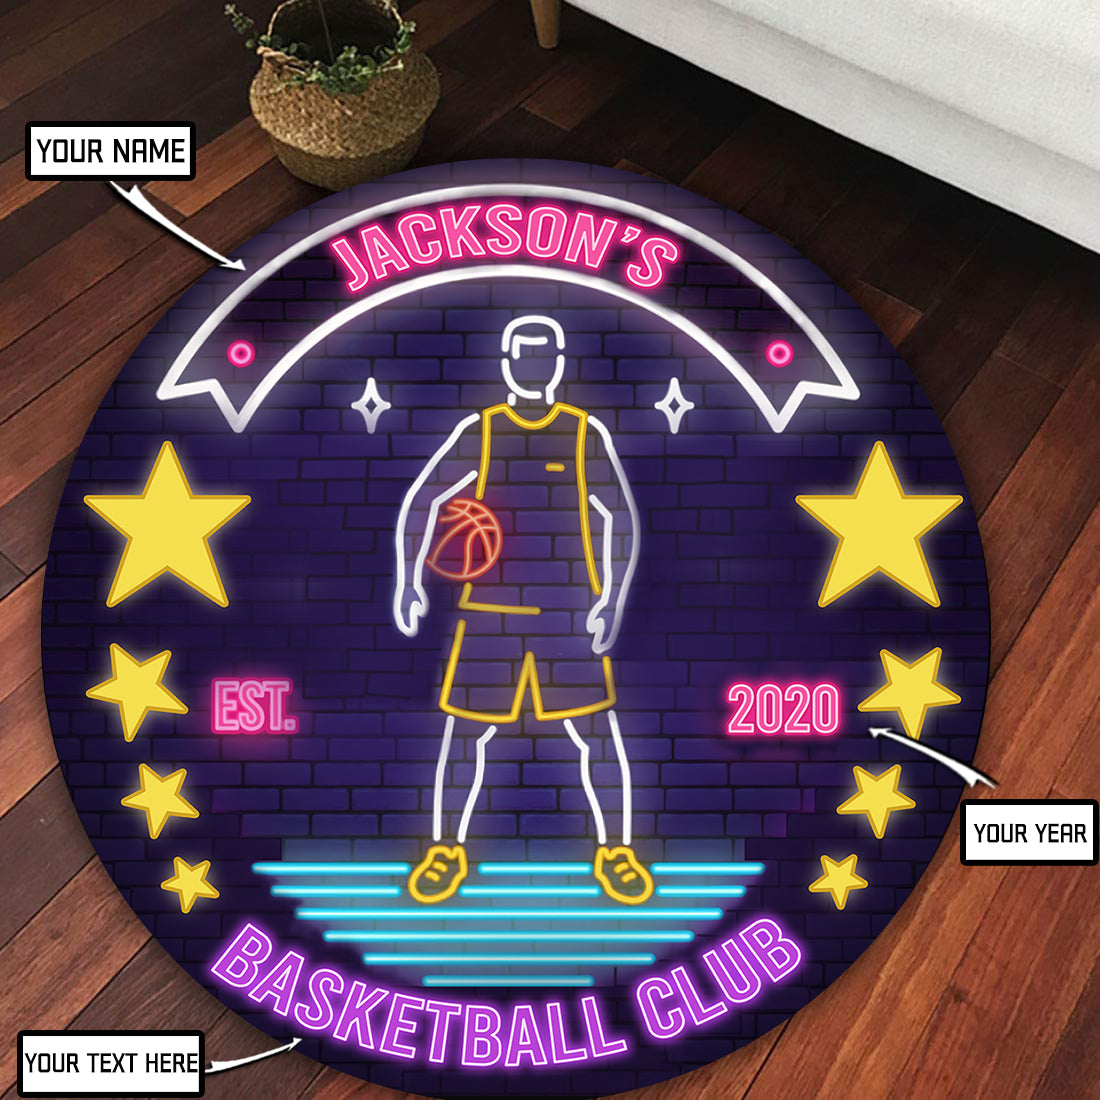 Personalized Basketball Round Mat 08010